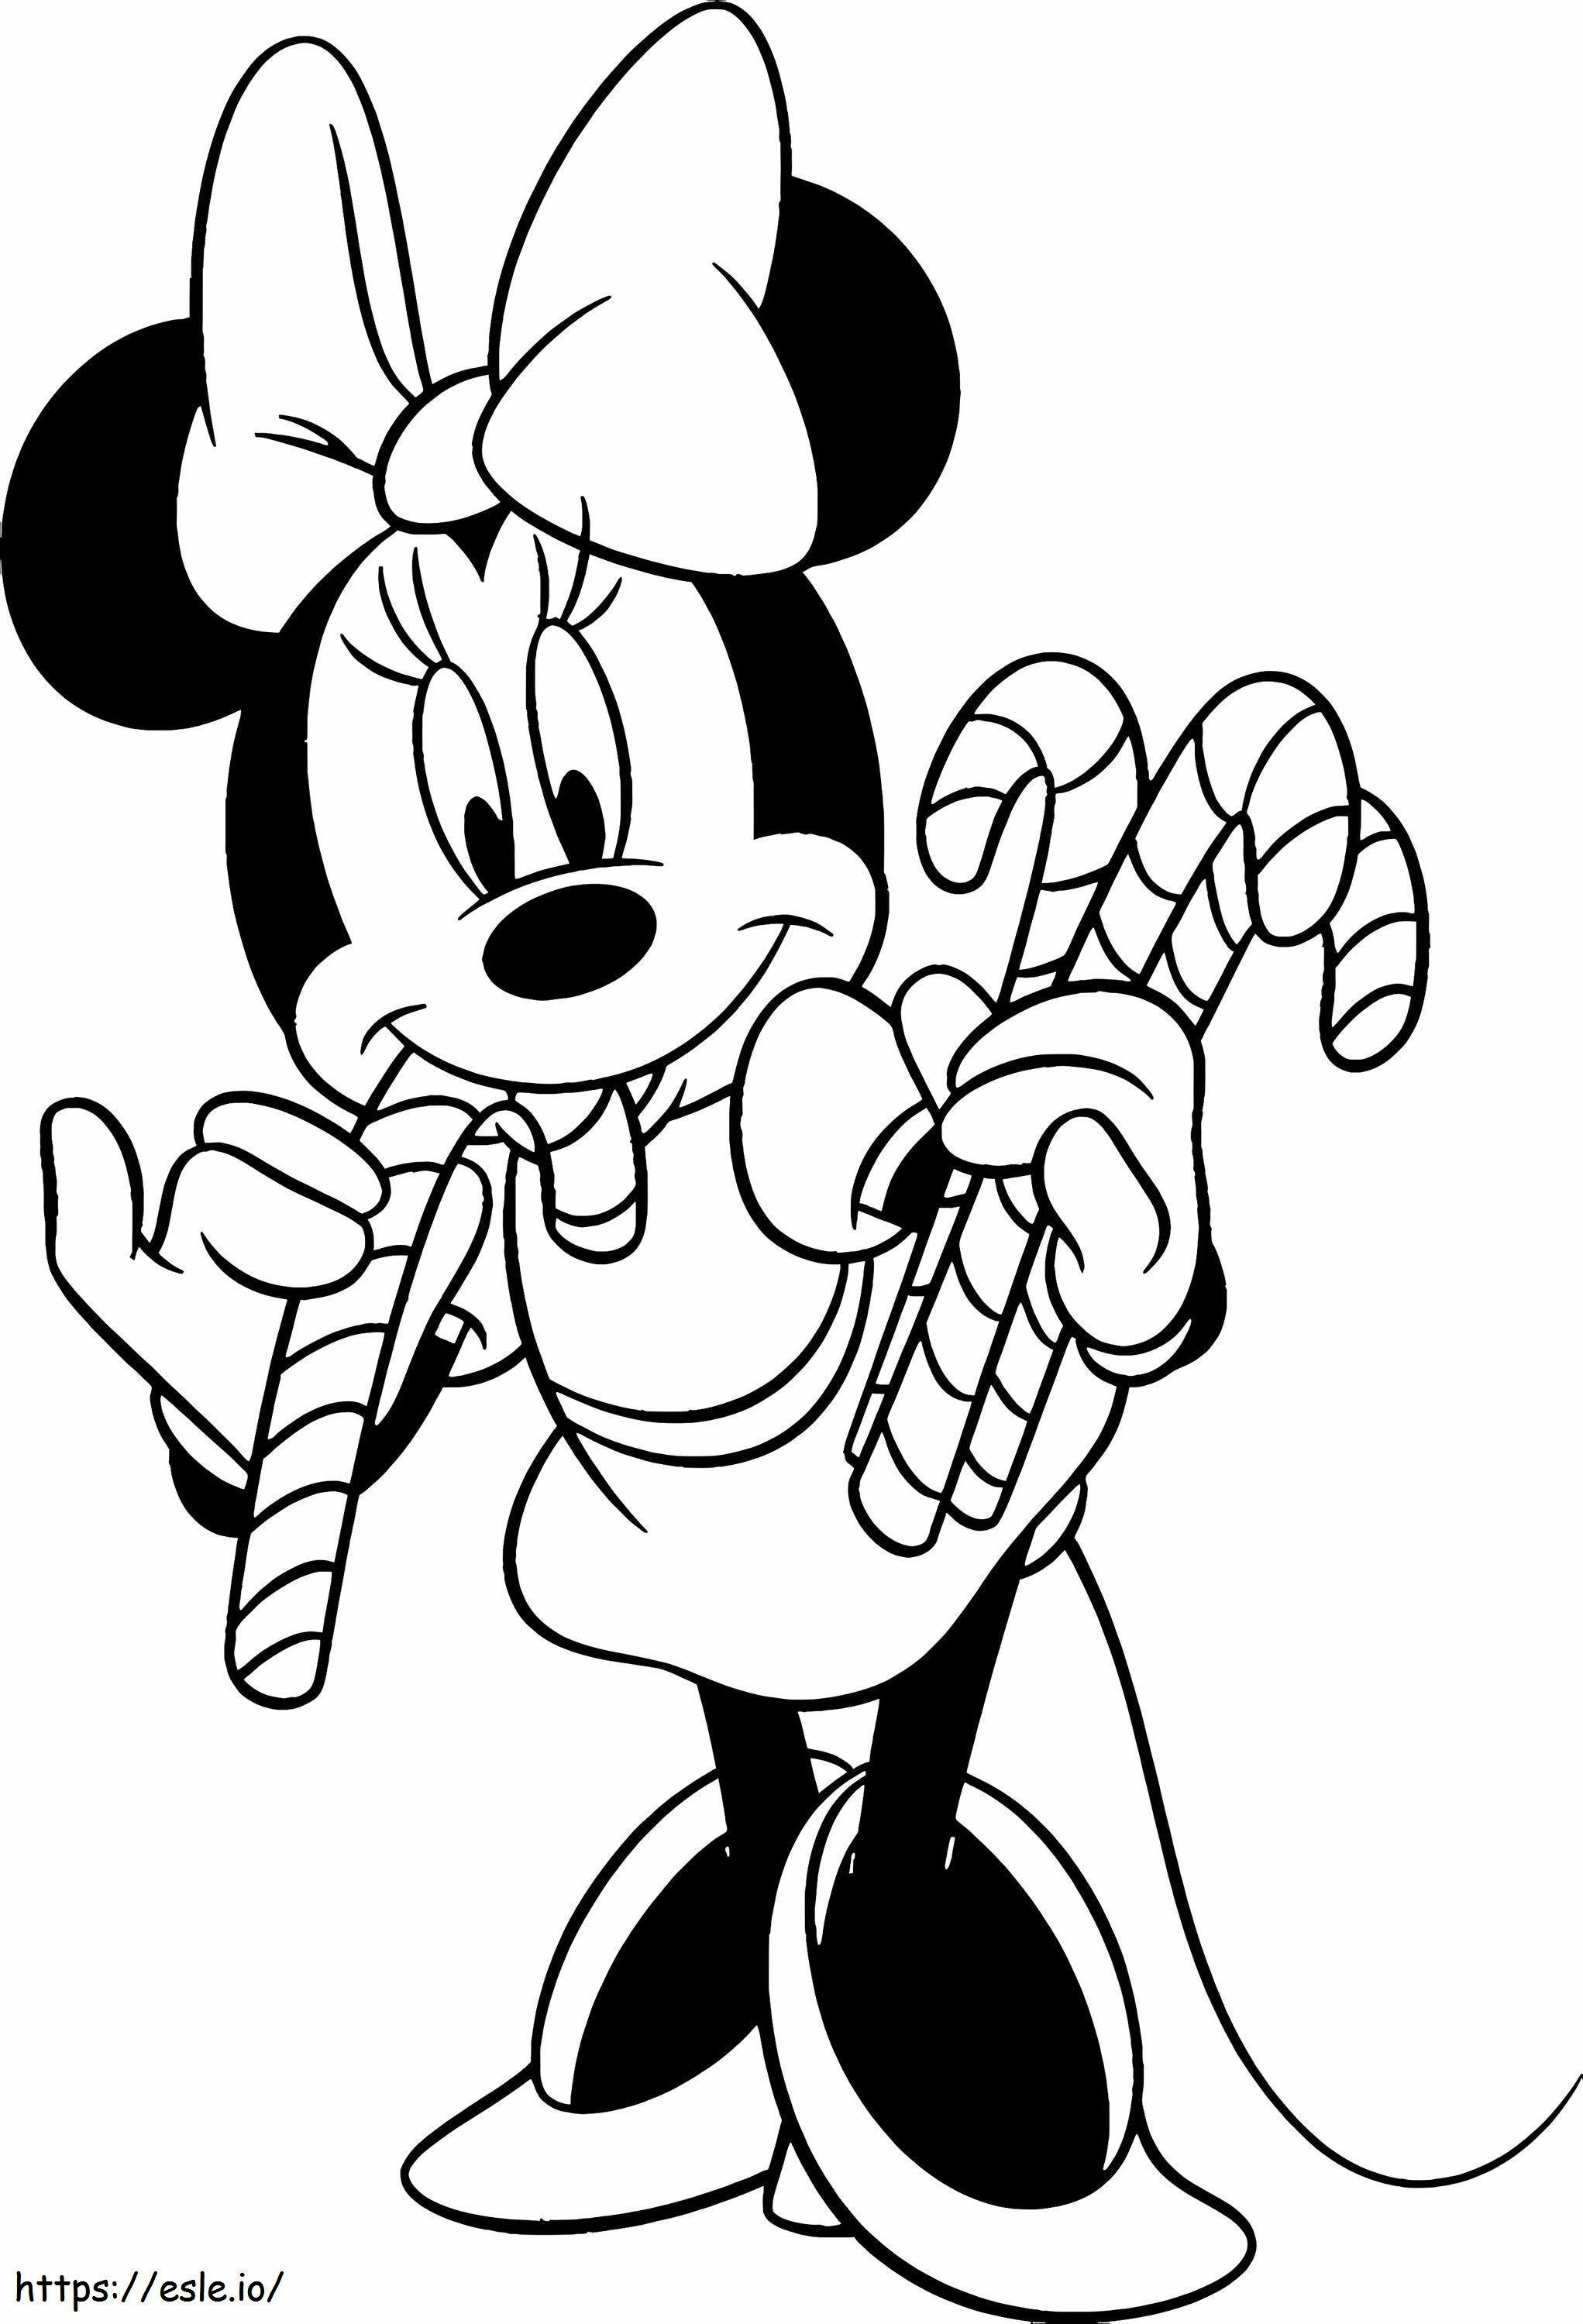 Minnie Mouse sosteniendo dulces para colorear